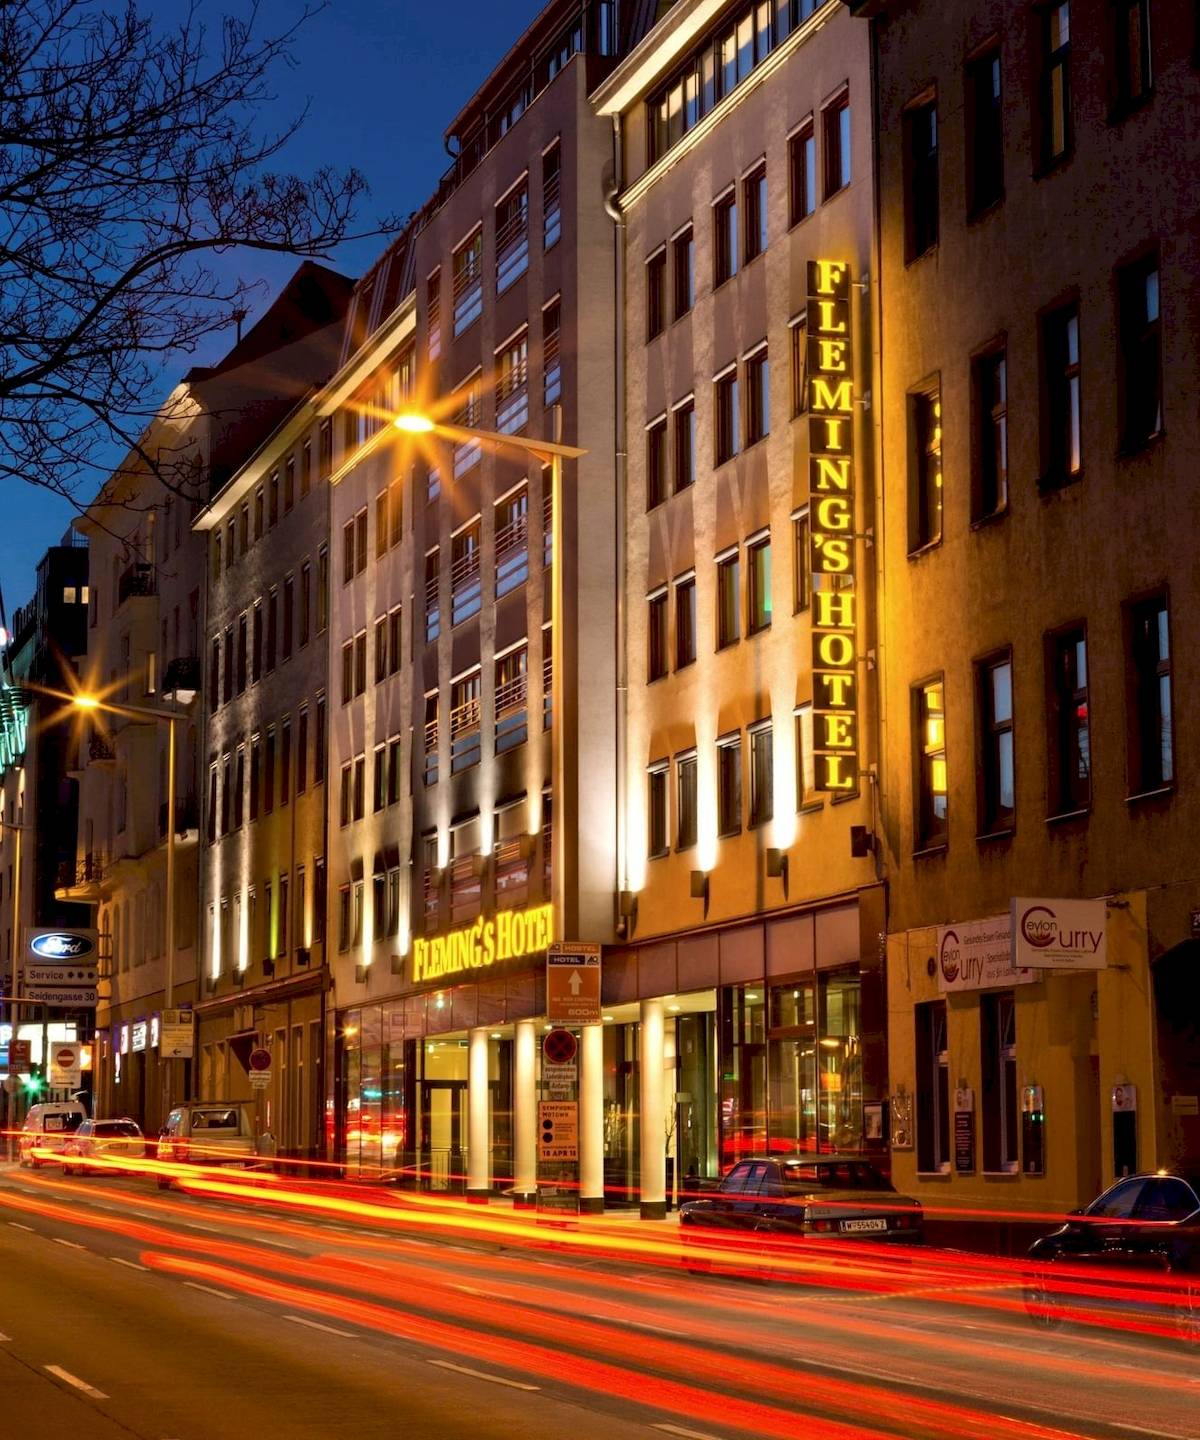 Flemings Hotel Wien-Stadthalle